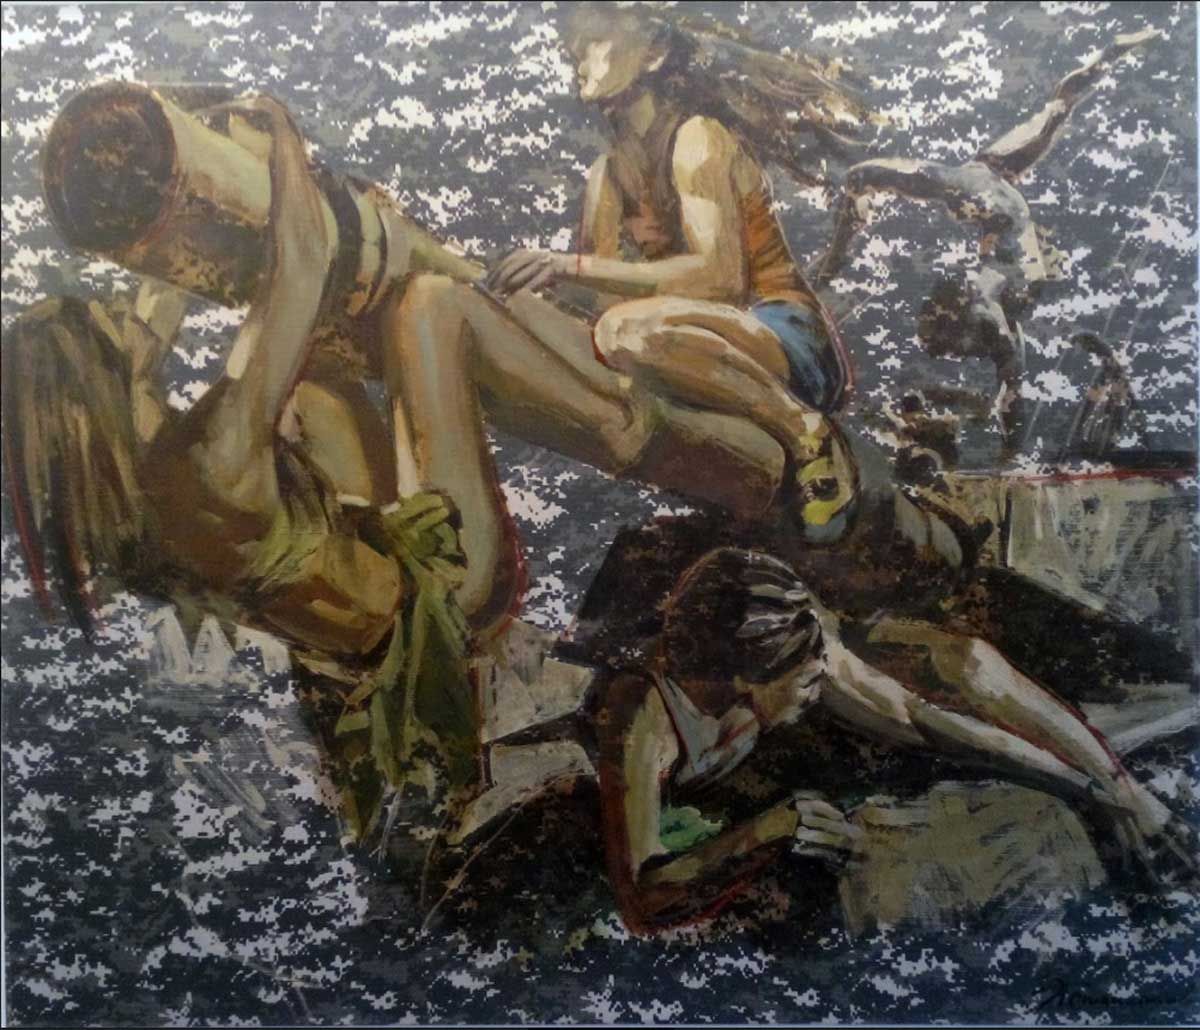 Original painting by Ed Potapenkov. "Amazons" Contemporary art in Satija Gallery